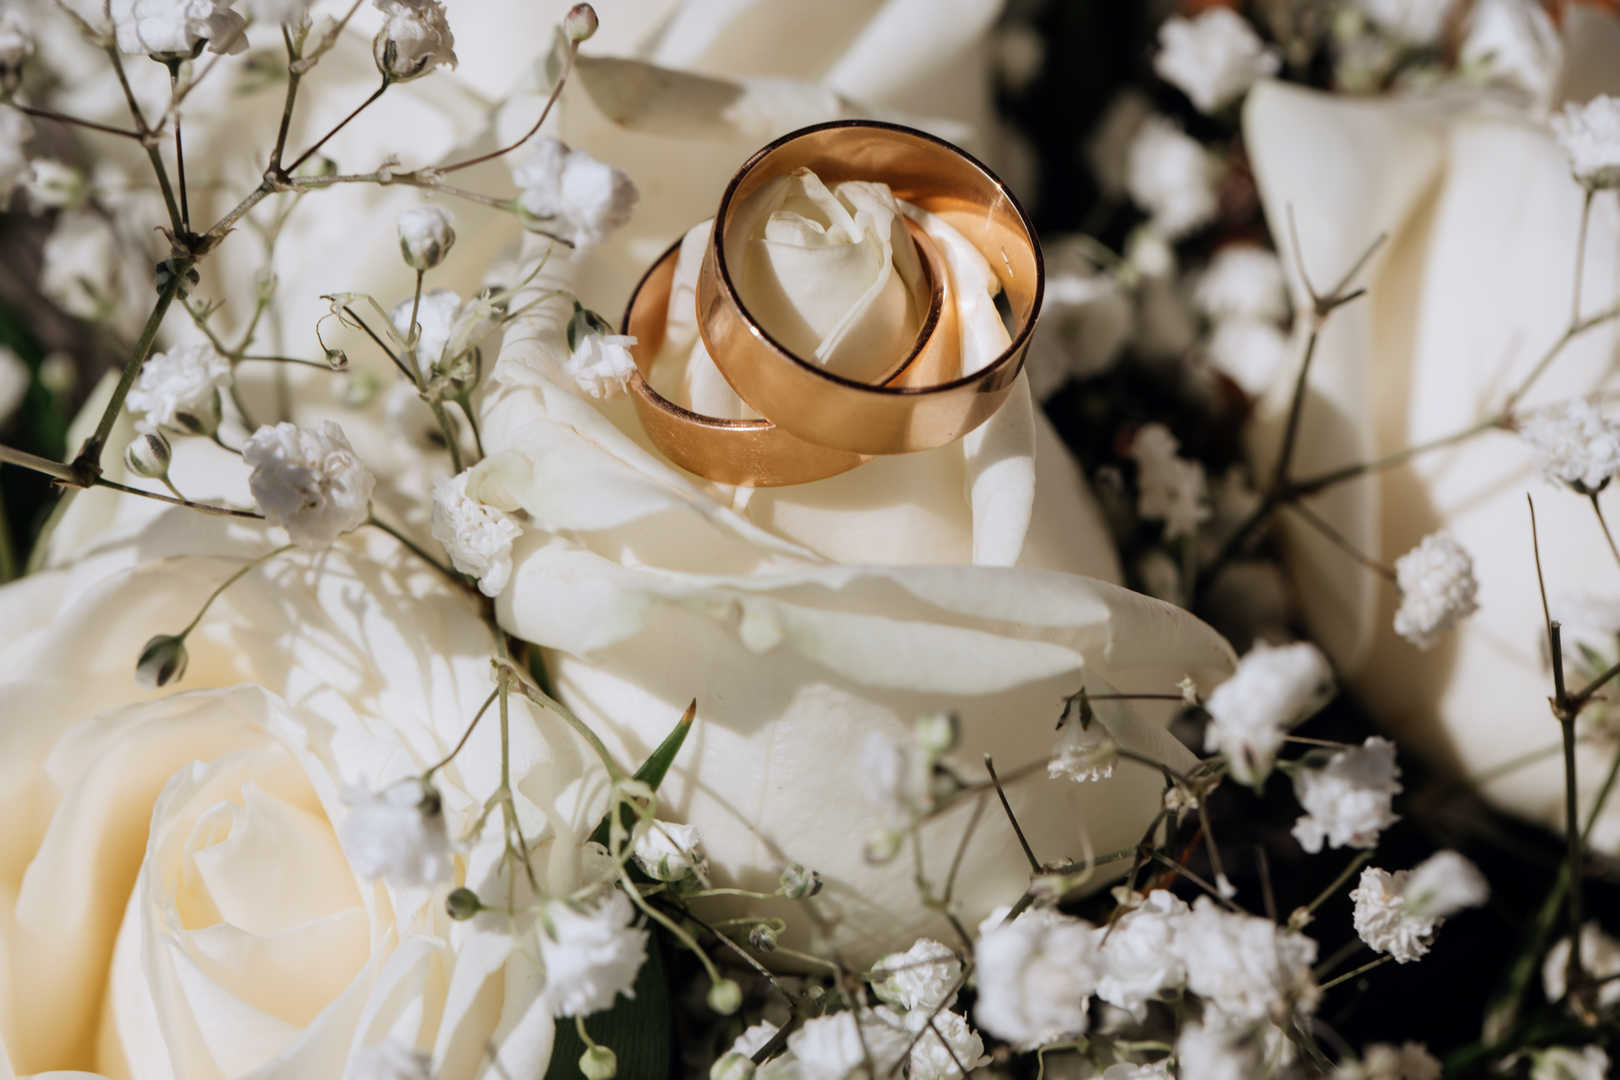 Anneaux de mariage en or sur la rose blanche du bouquet de mariage tout organisé par un wedding planner haut de gamme.